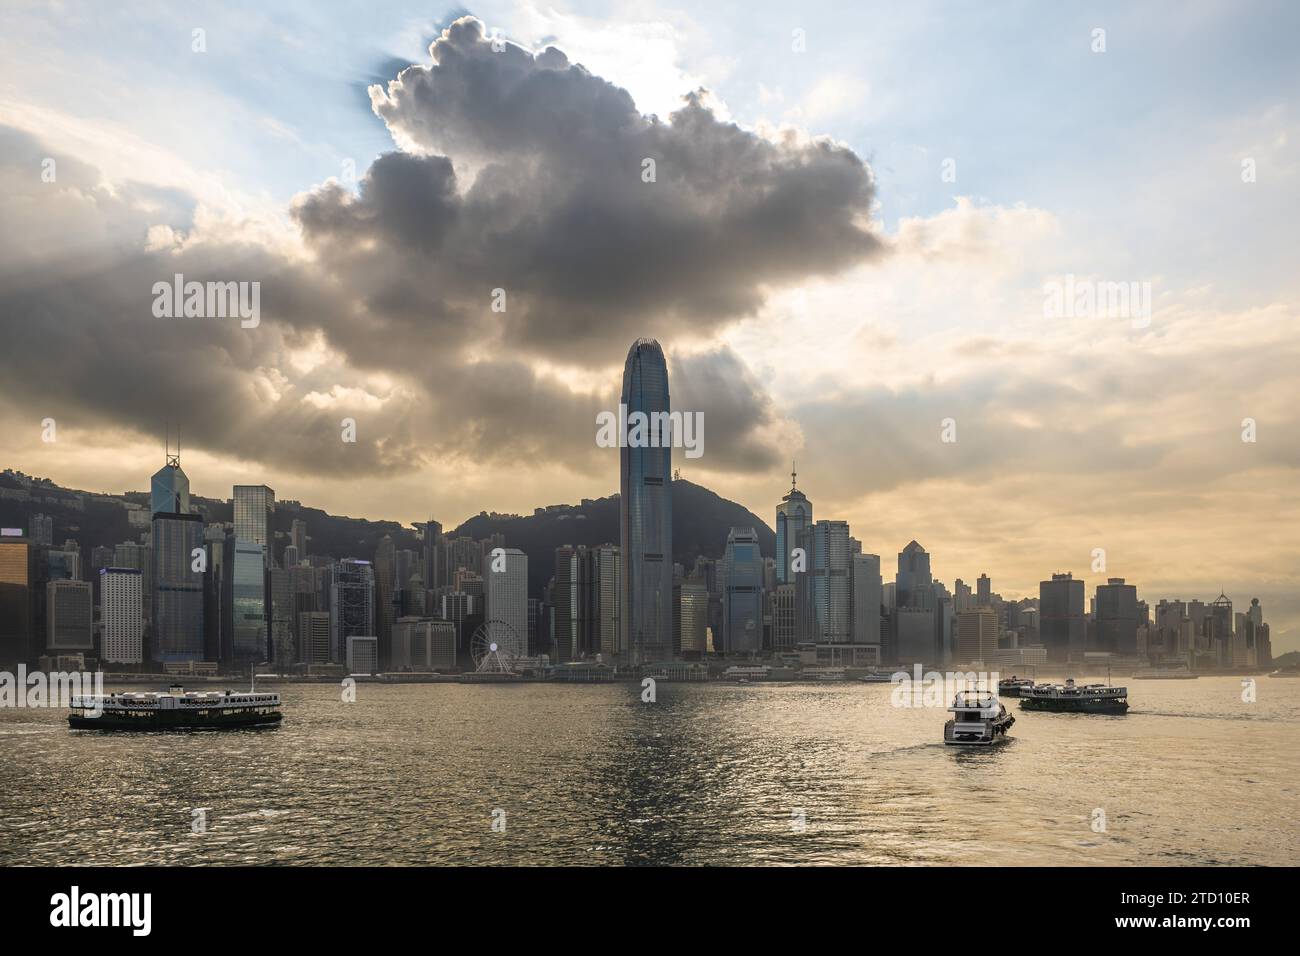 scenery of victoria harbor and hongkong island in hong kong, China Stock Photo